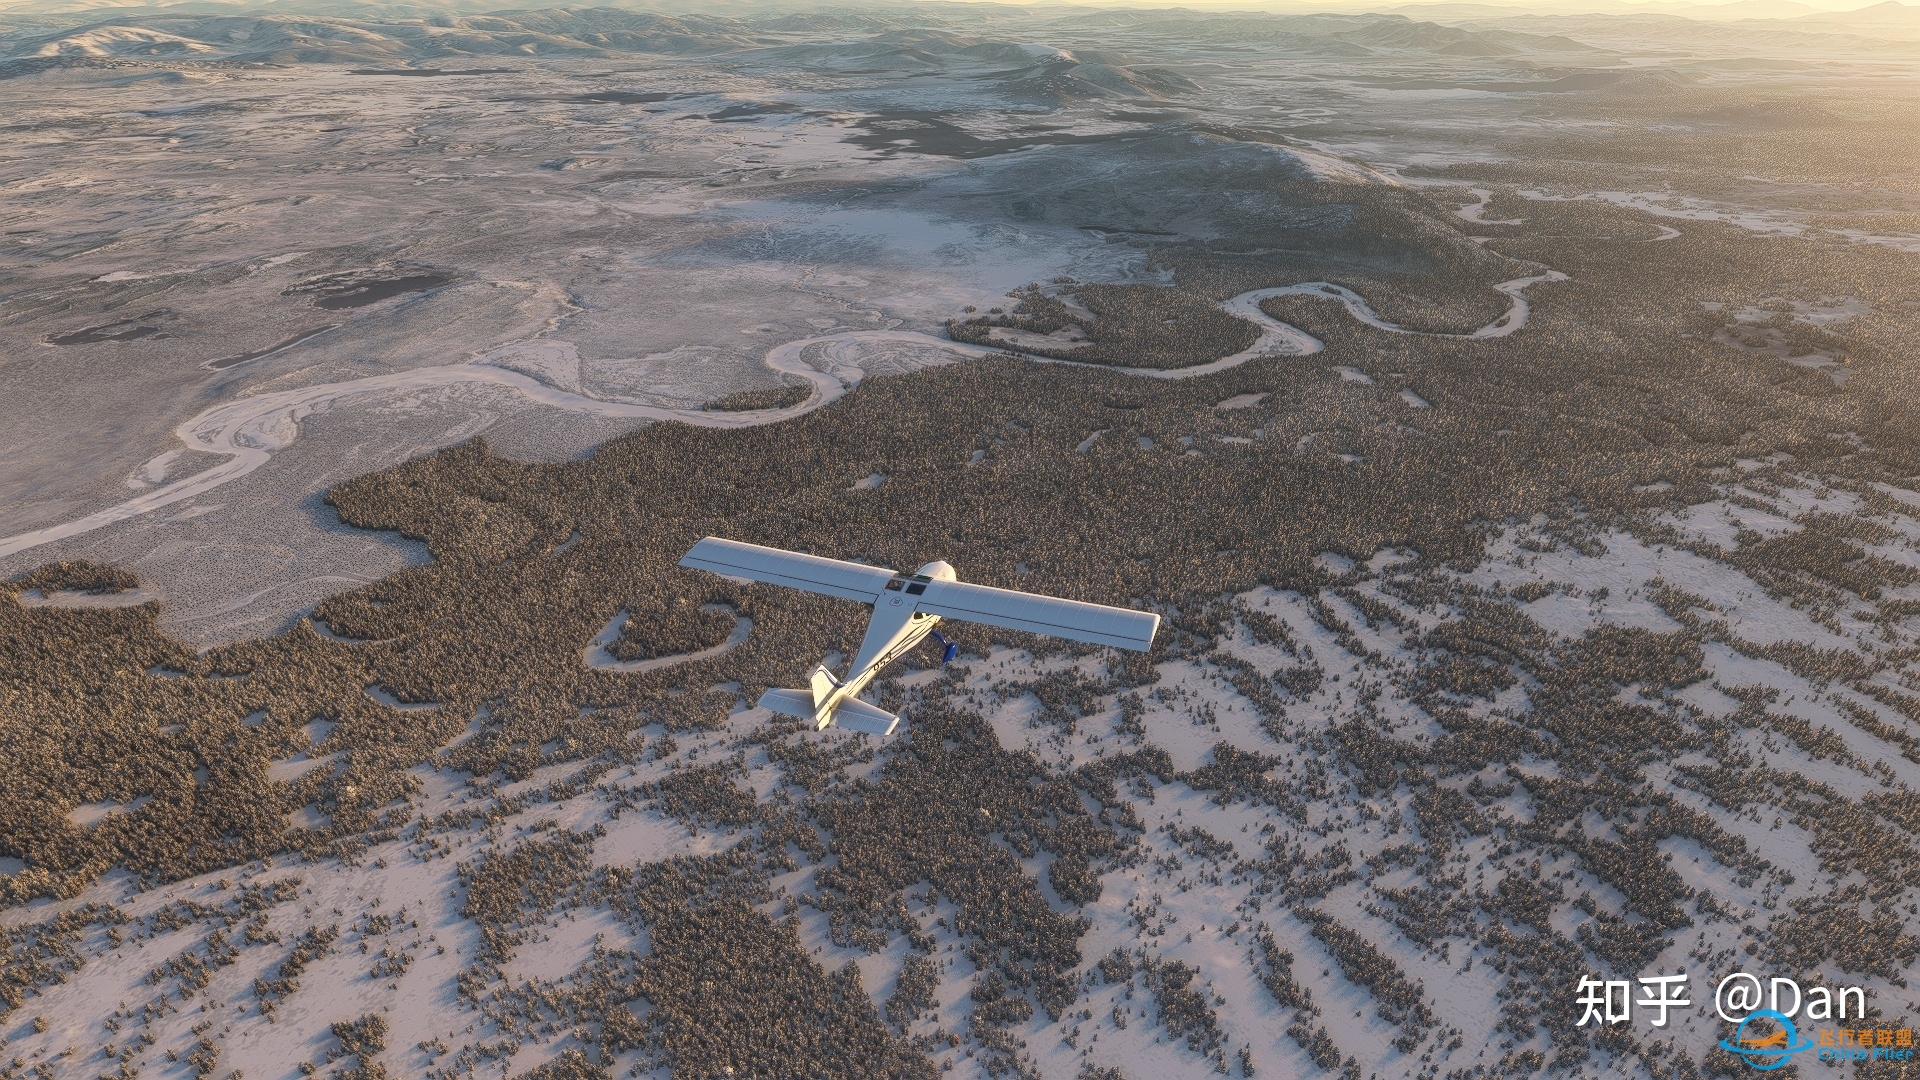 飞行模拟游戏《微软飞行模拟2020》实际体验如何？-7333 